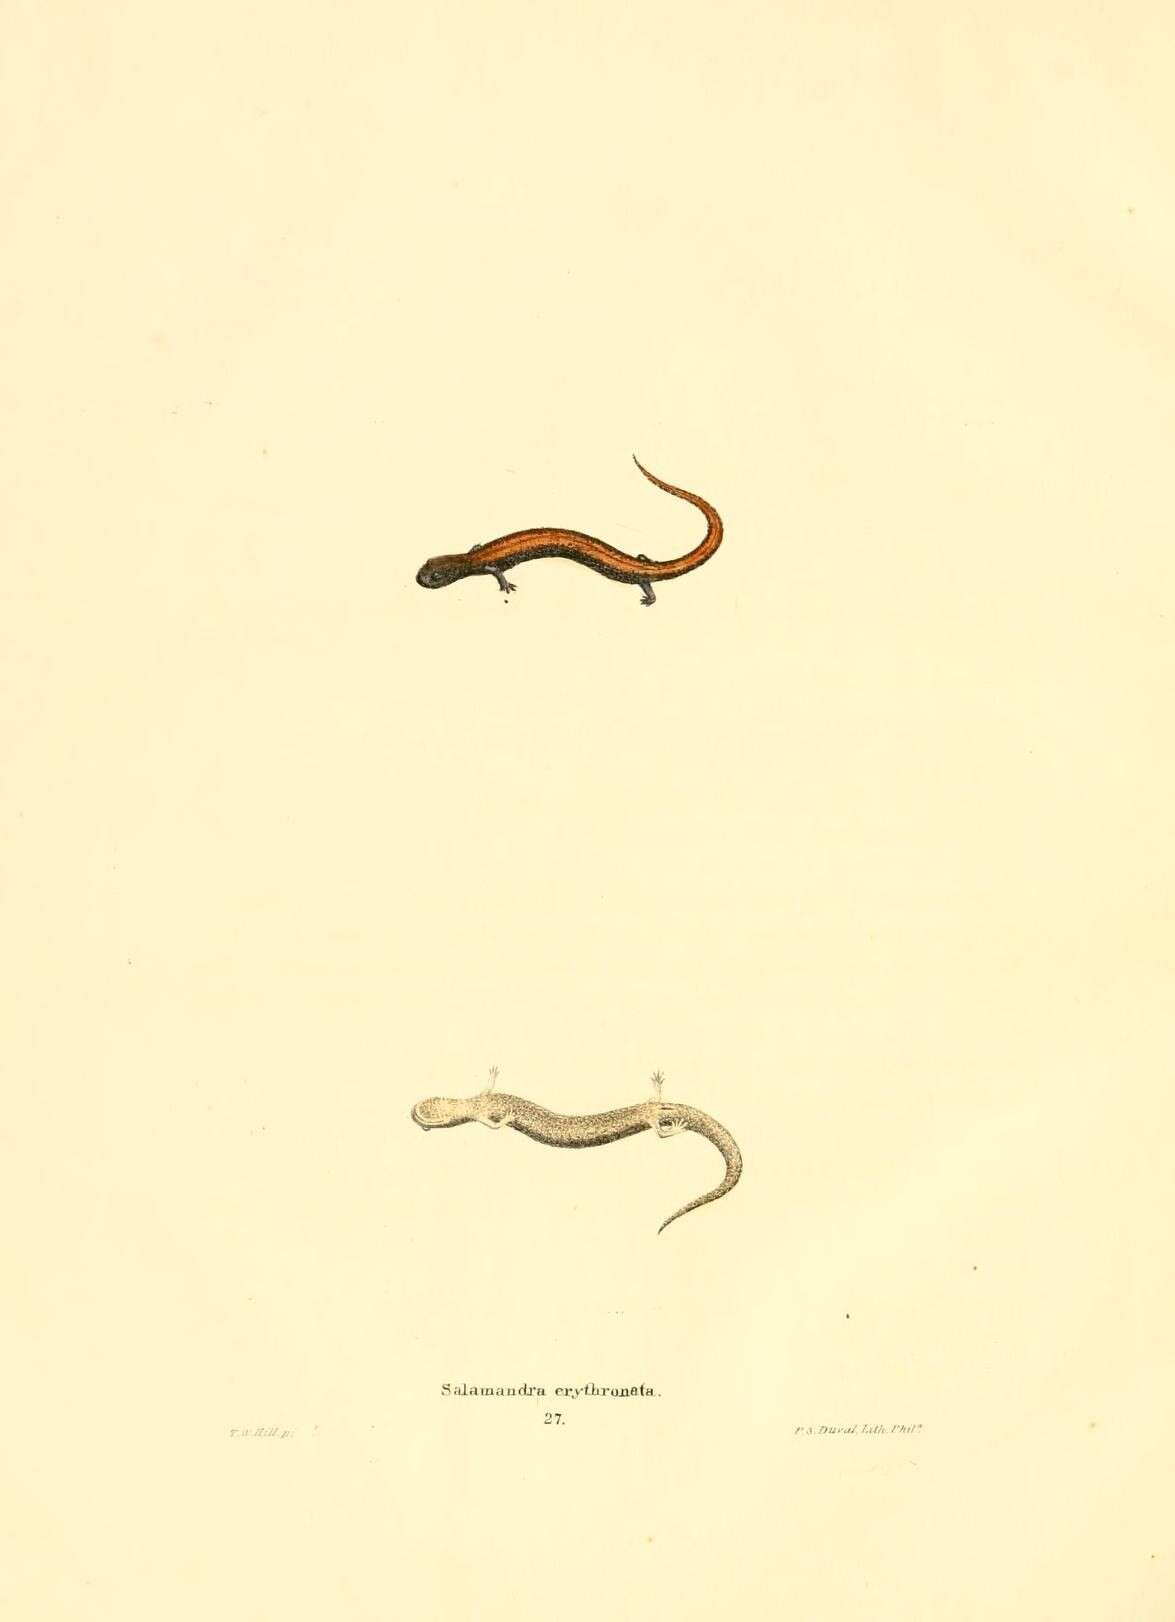 Image of Salamandra erythronata